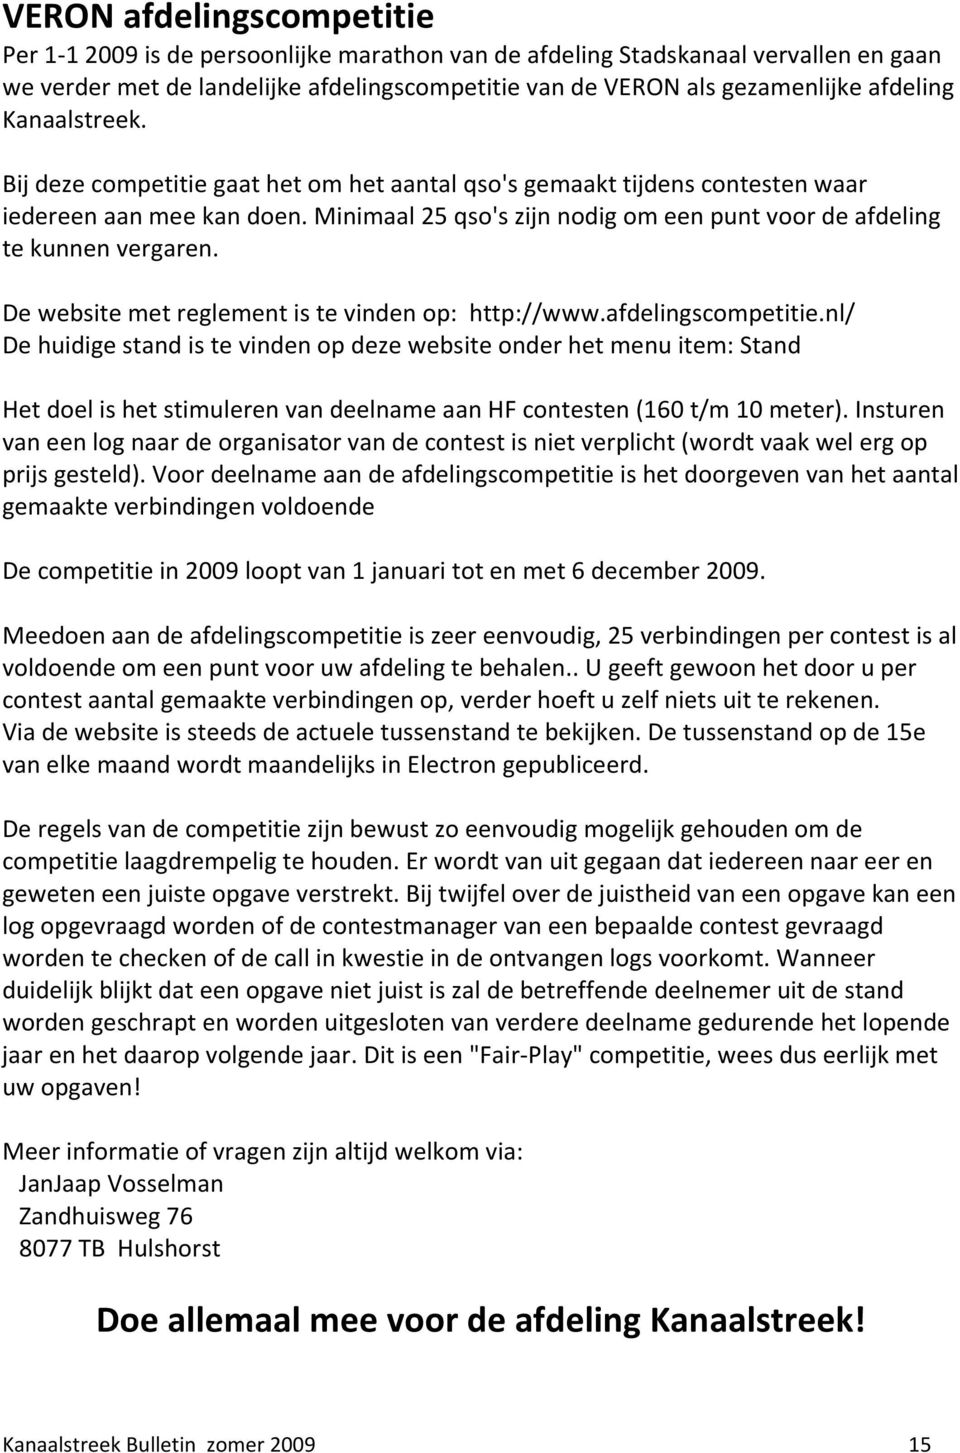 De website met reglement is te vinden op: http://www.afdelingscompetitie.